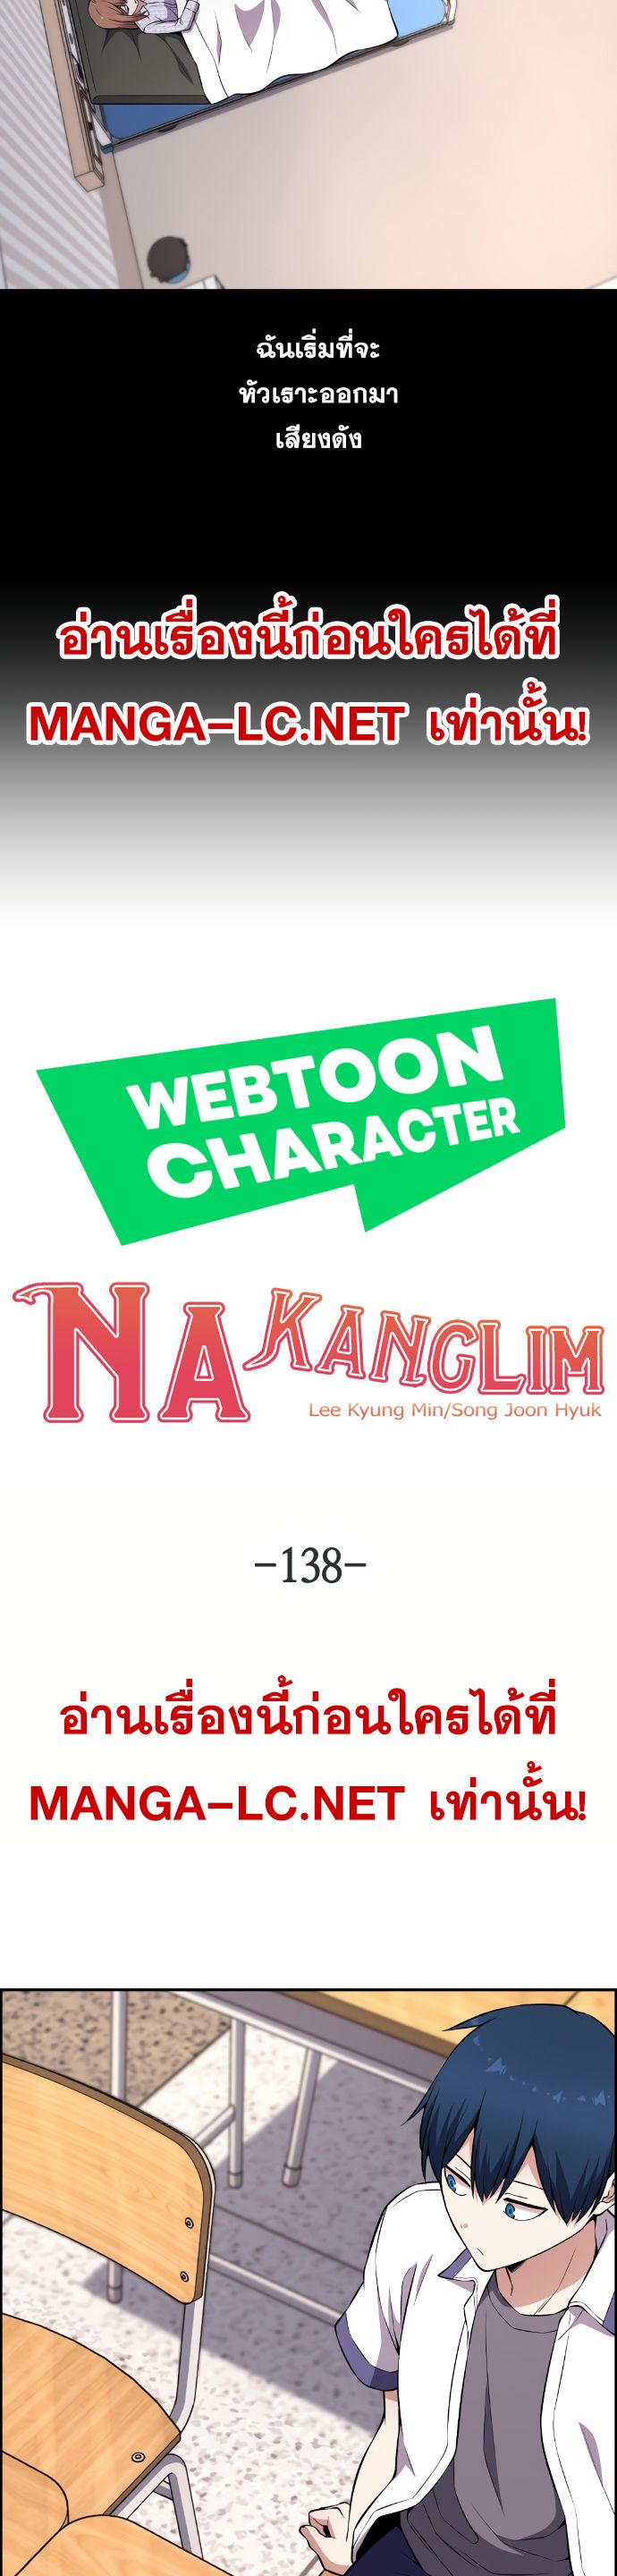 Webtoon Character Na Kang Lim ตอนที่ 138 (18)